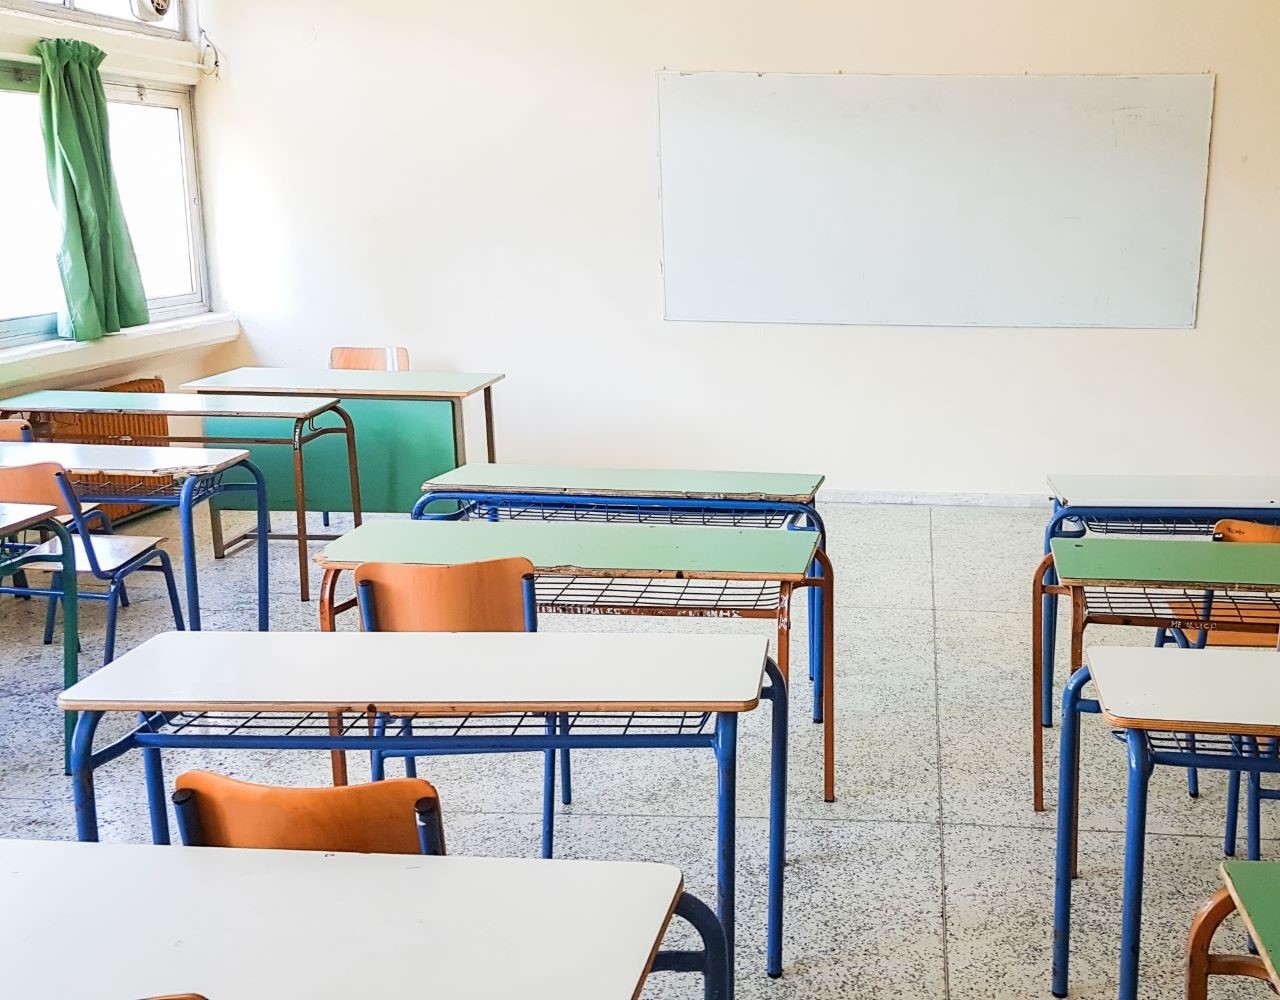 Ικαρία: Καθηγητές κατηγορούν την διευθύντρια για διατάραξη της έκρυθμης λειτουργίας του σχολείου